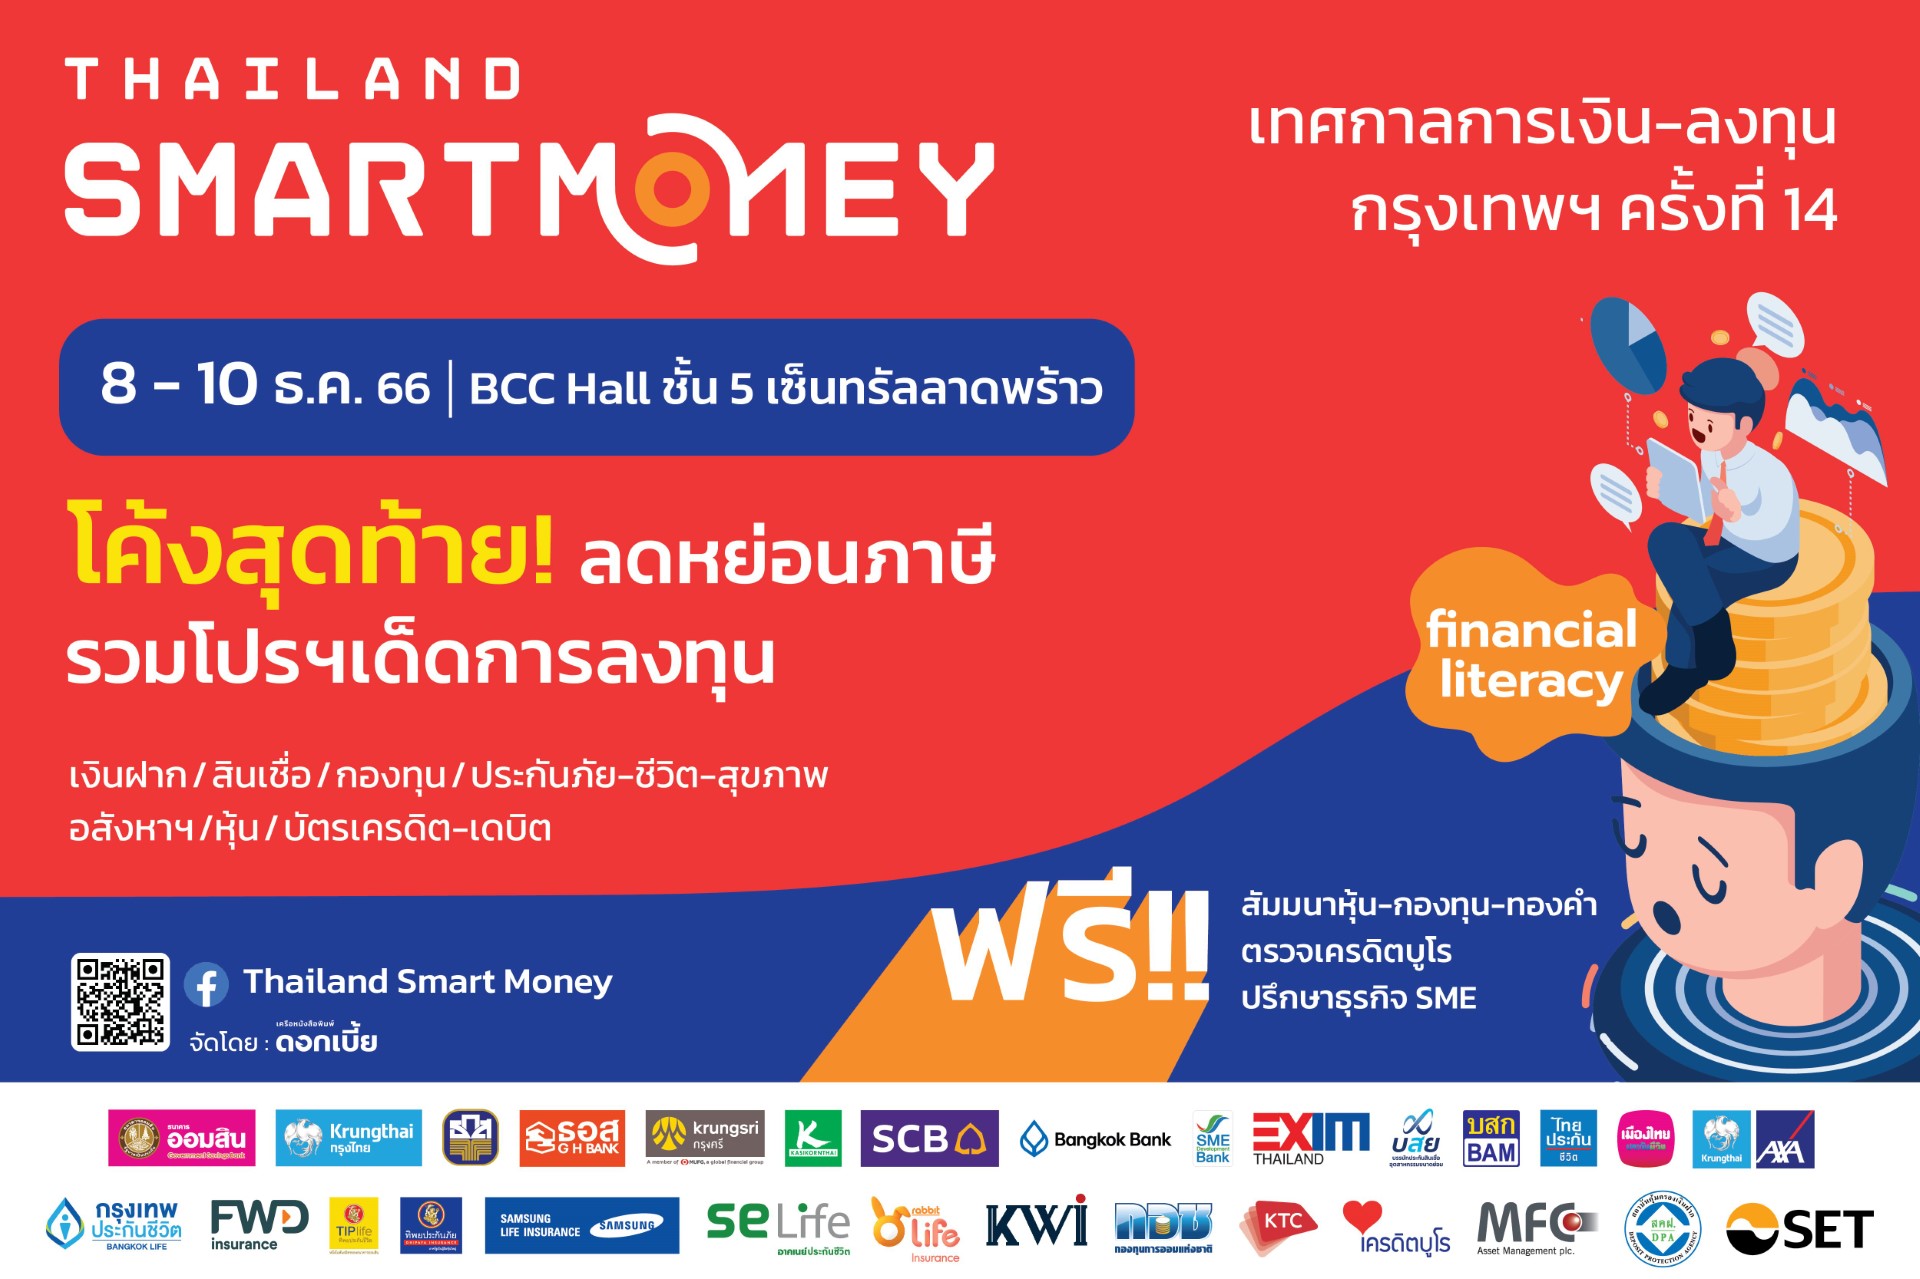 Thailand Smart Money ครั้งที่ 14 รู้เท่าทัน การเงิน-การลงทุน จัดหนักโปรฯ ส่งท้ายปี ฝาก กู้ หุ้น กองทุน ทองคำ ประกัน อสังหาฯ